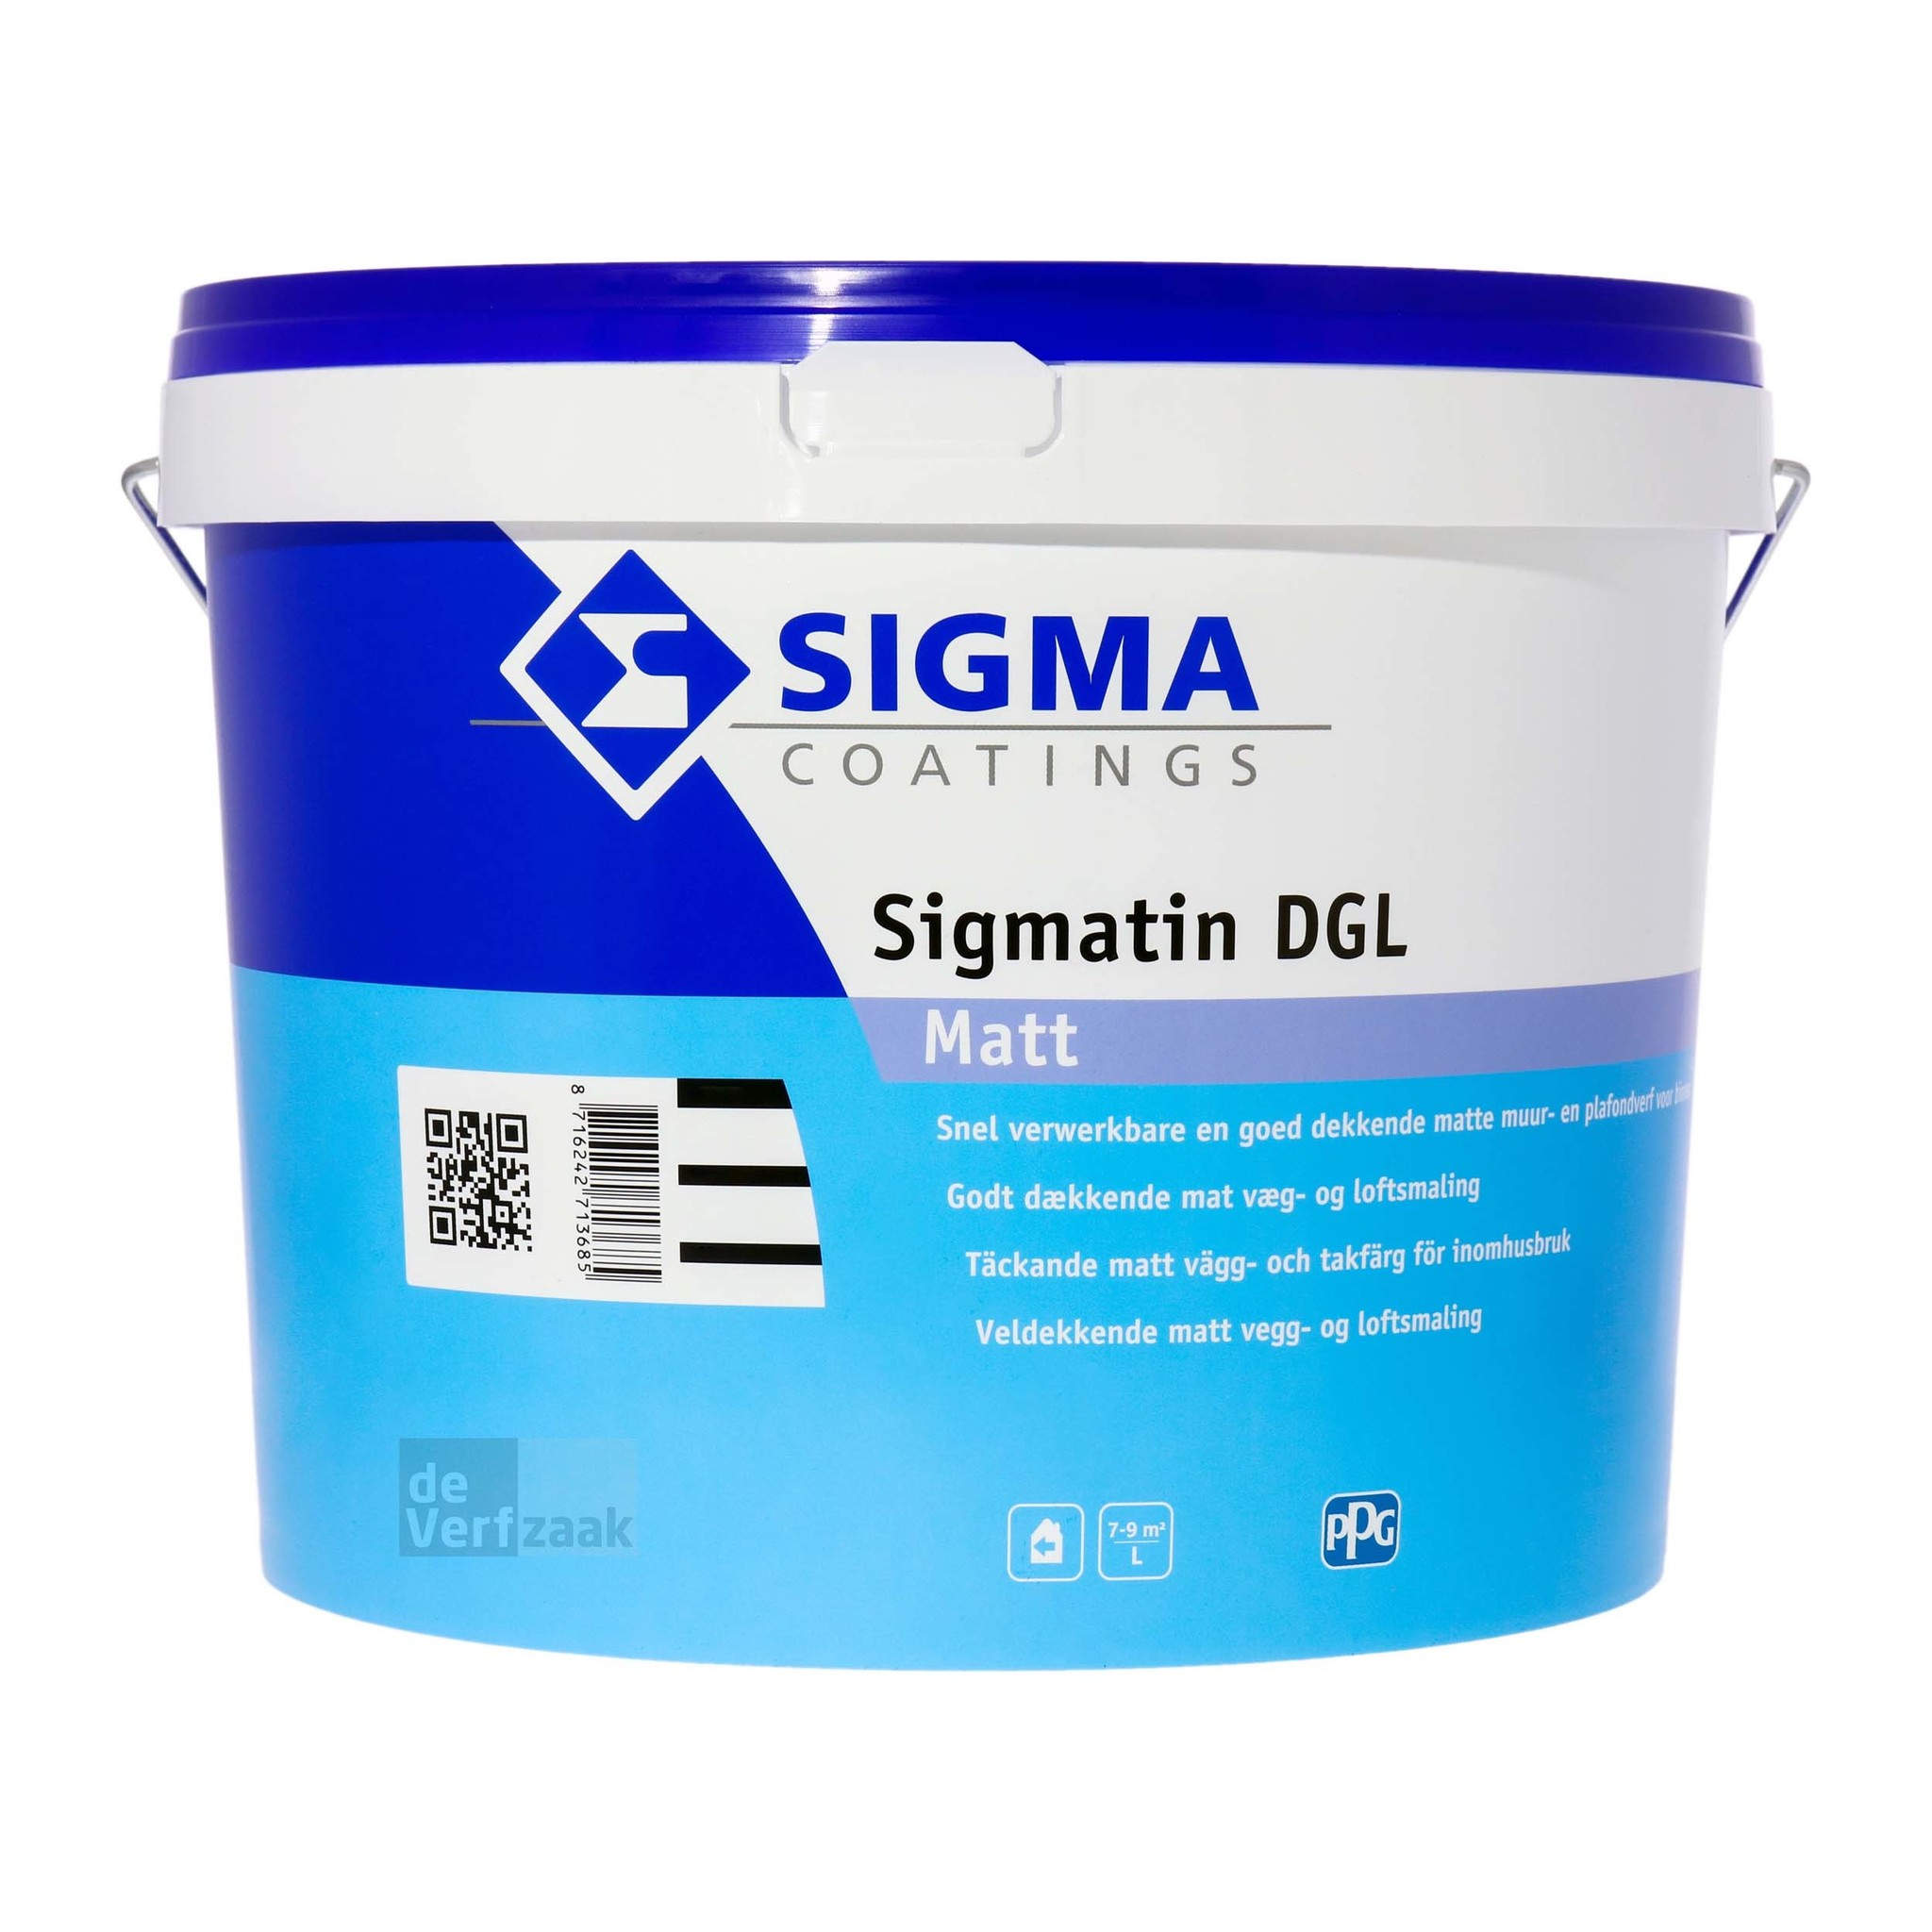 Sigma Sigmatin DGL kopen? | Korting tot - De Verfzaak